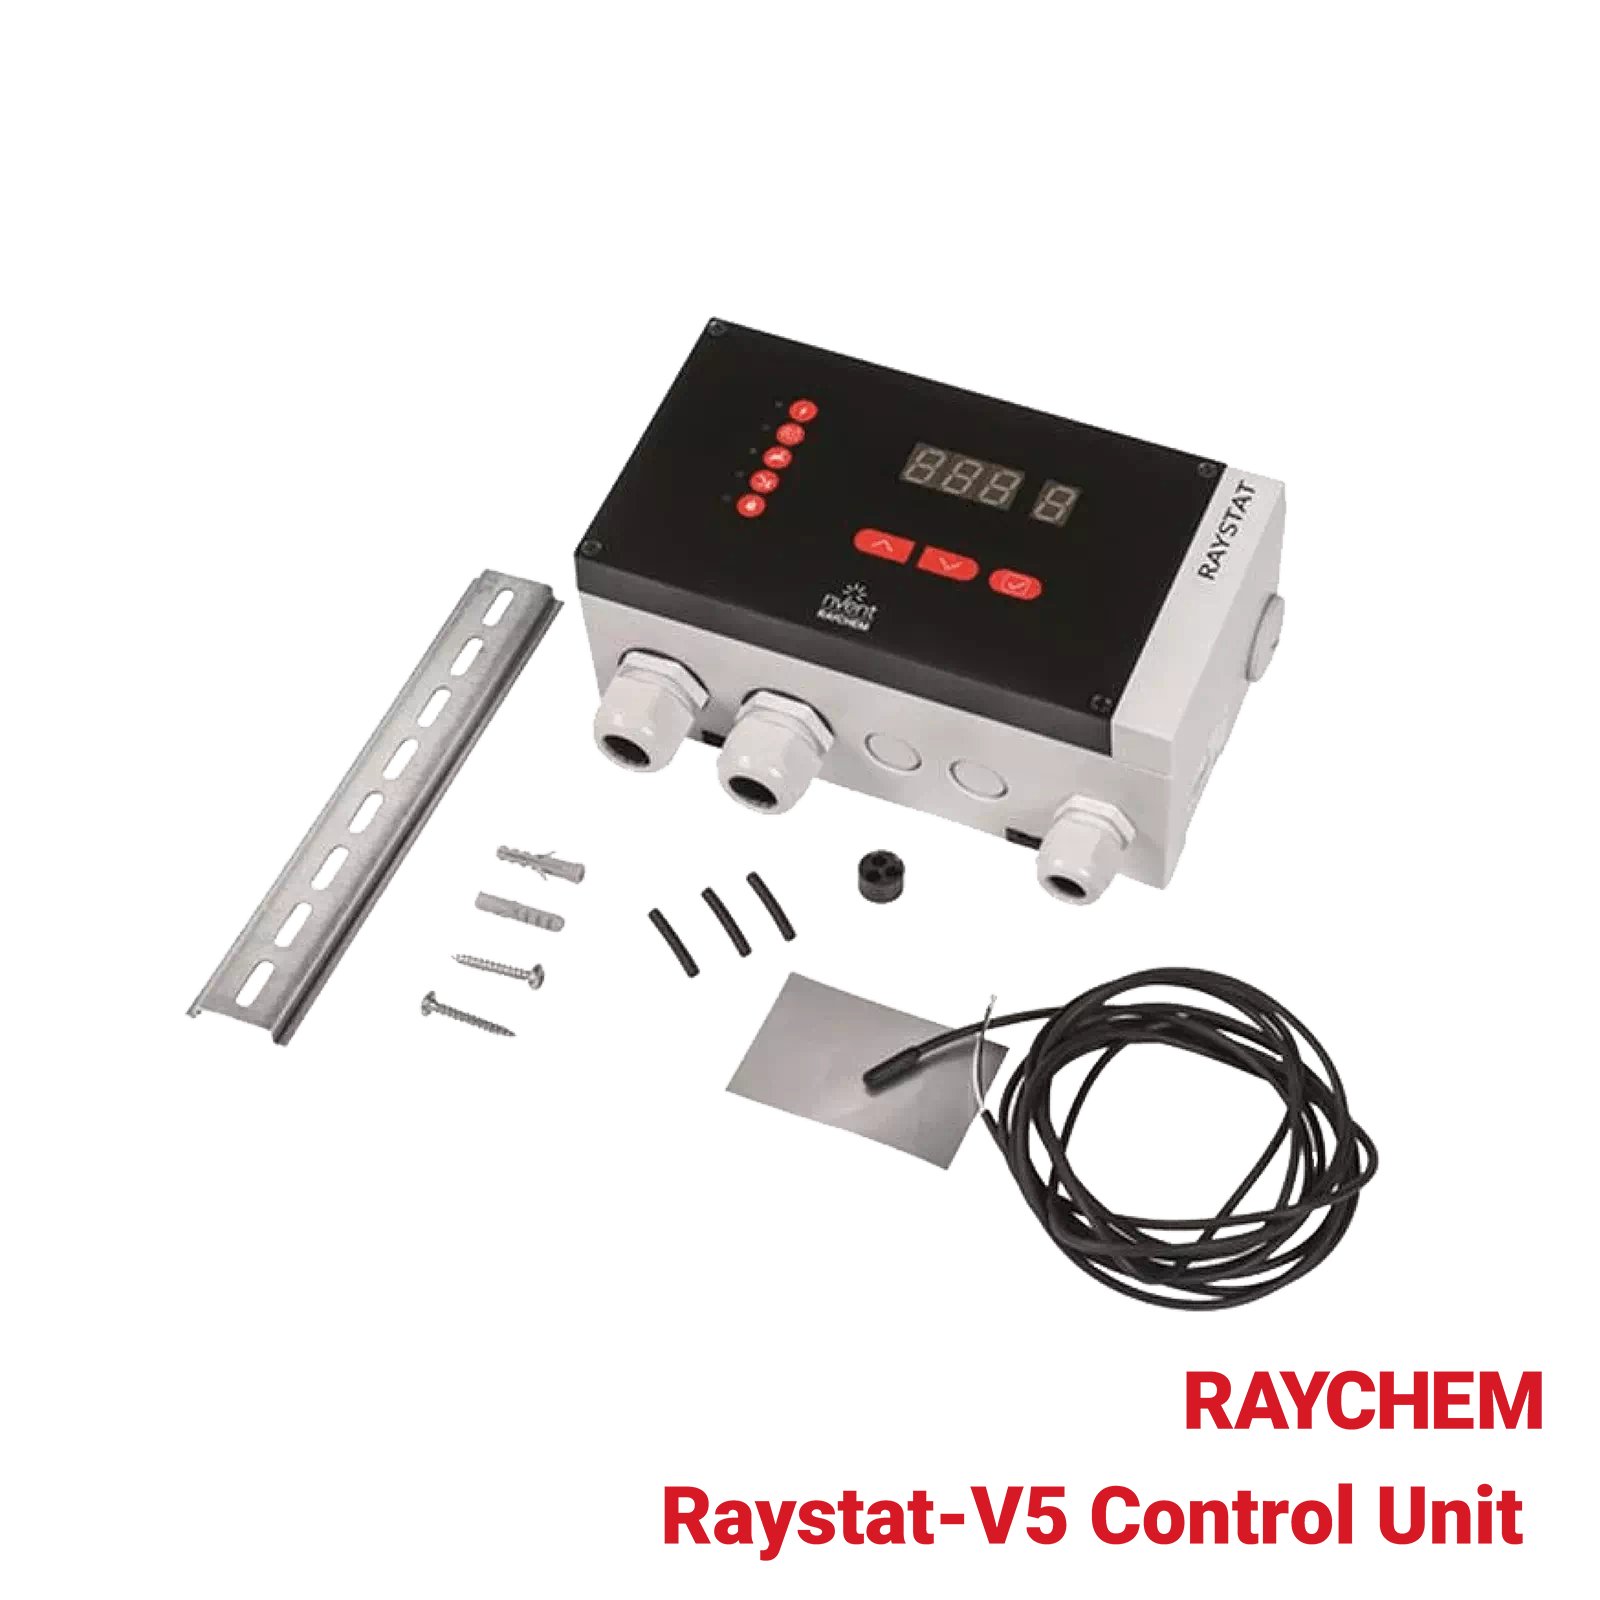 Raystat-V5-Control-Unit-Raychem-Industrial-Heating